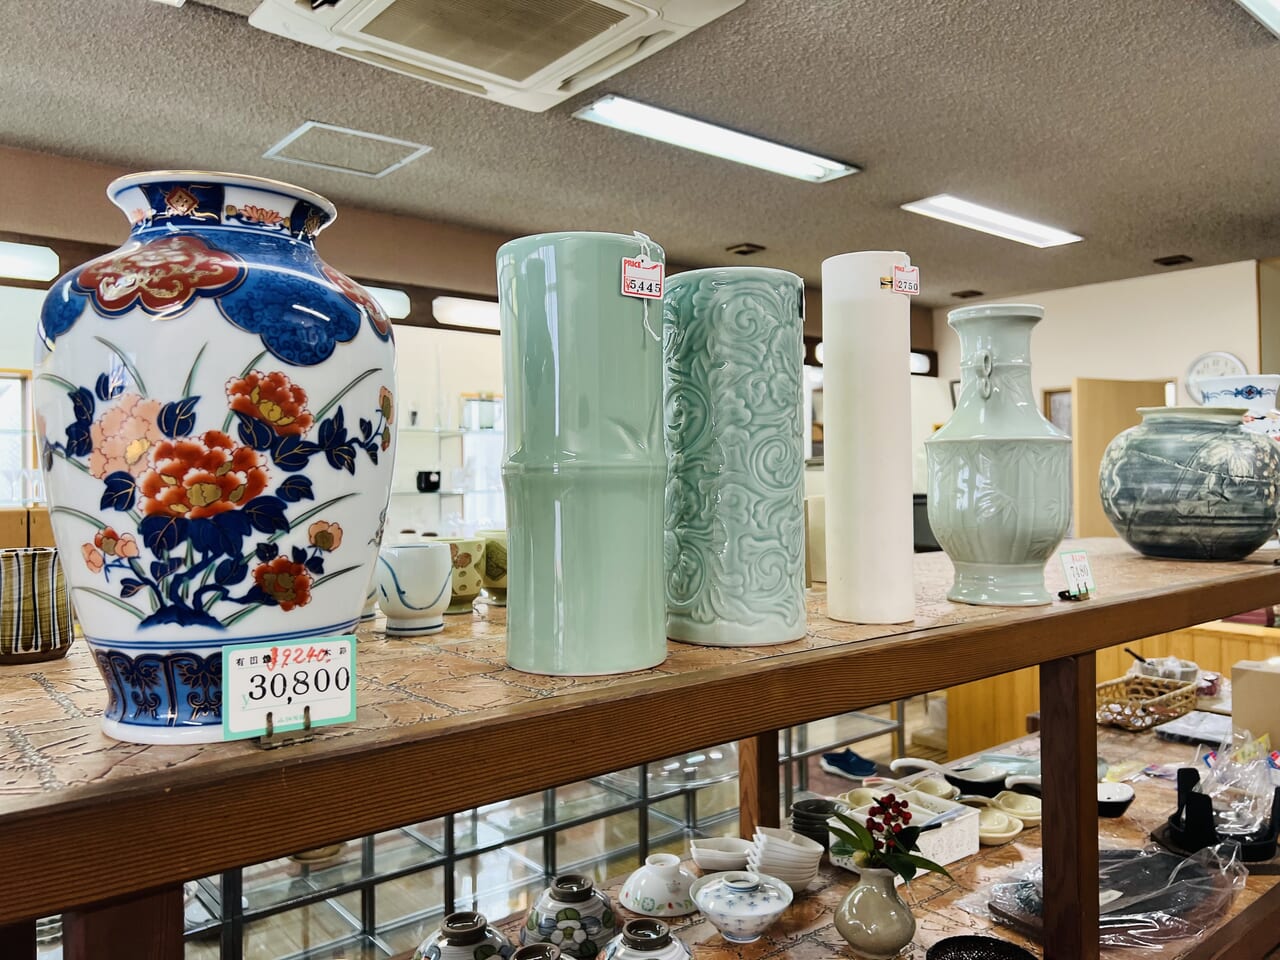 閉店セール中の「小畑陶器店」で取り扱っている陶器